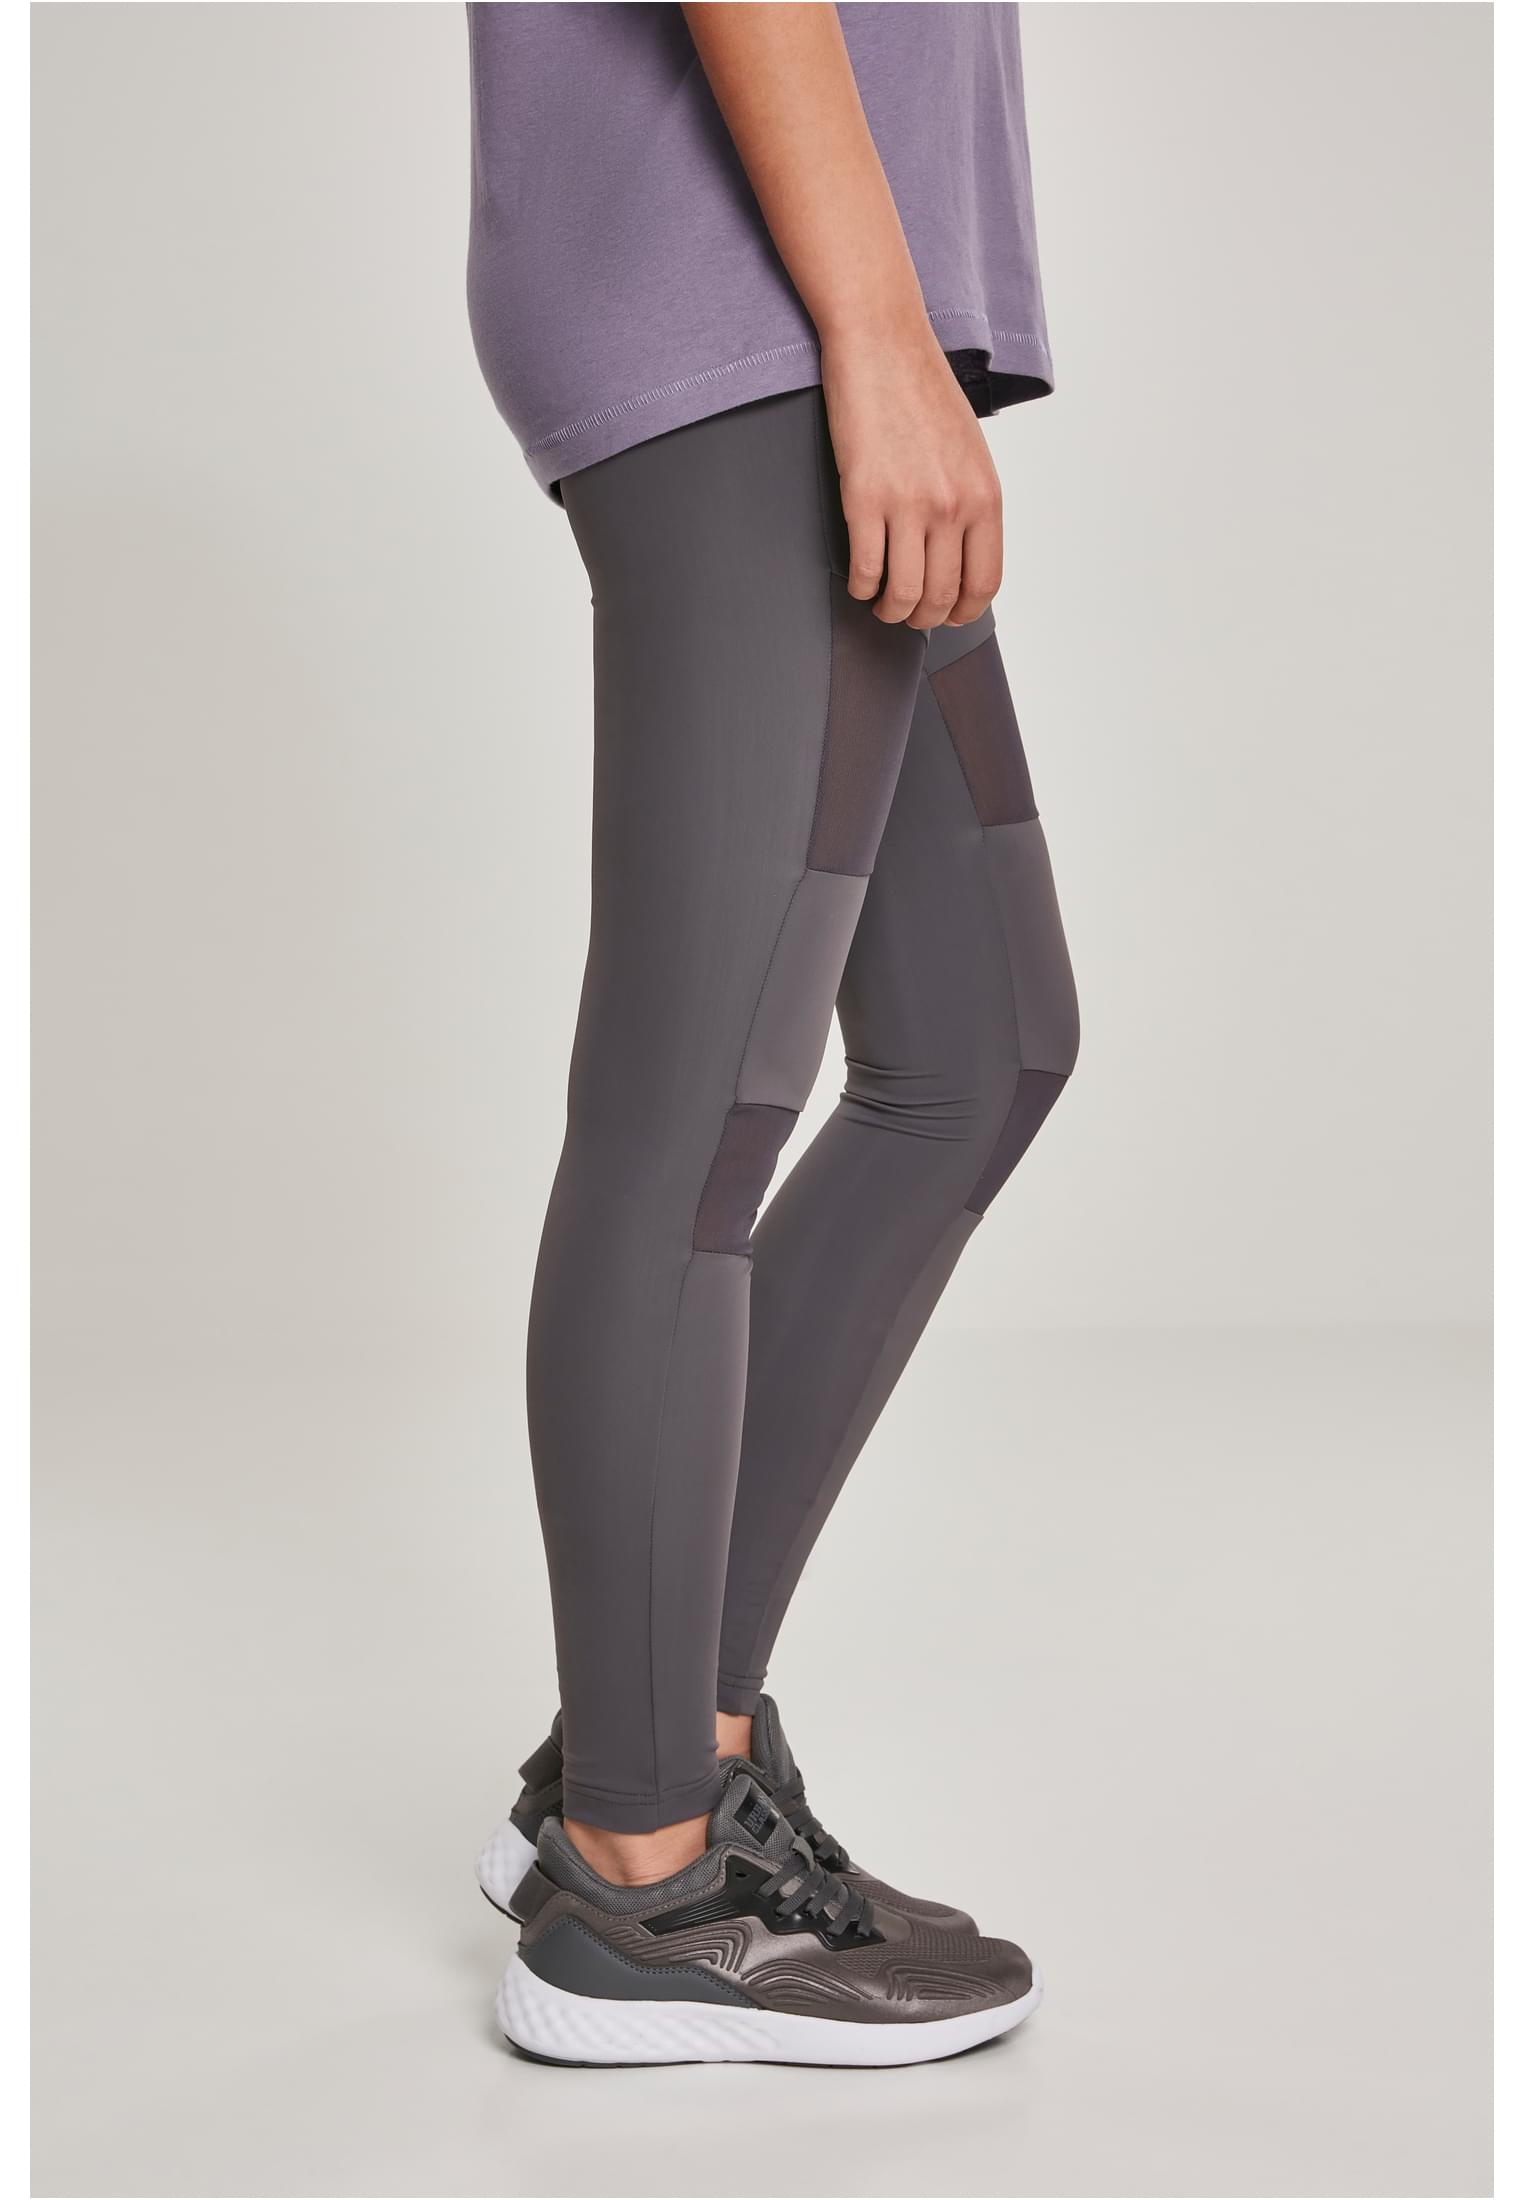 Damen Ladies Tech Mesh Leggings in Farbe dark grey